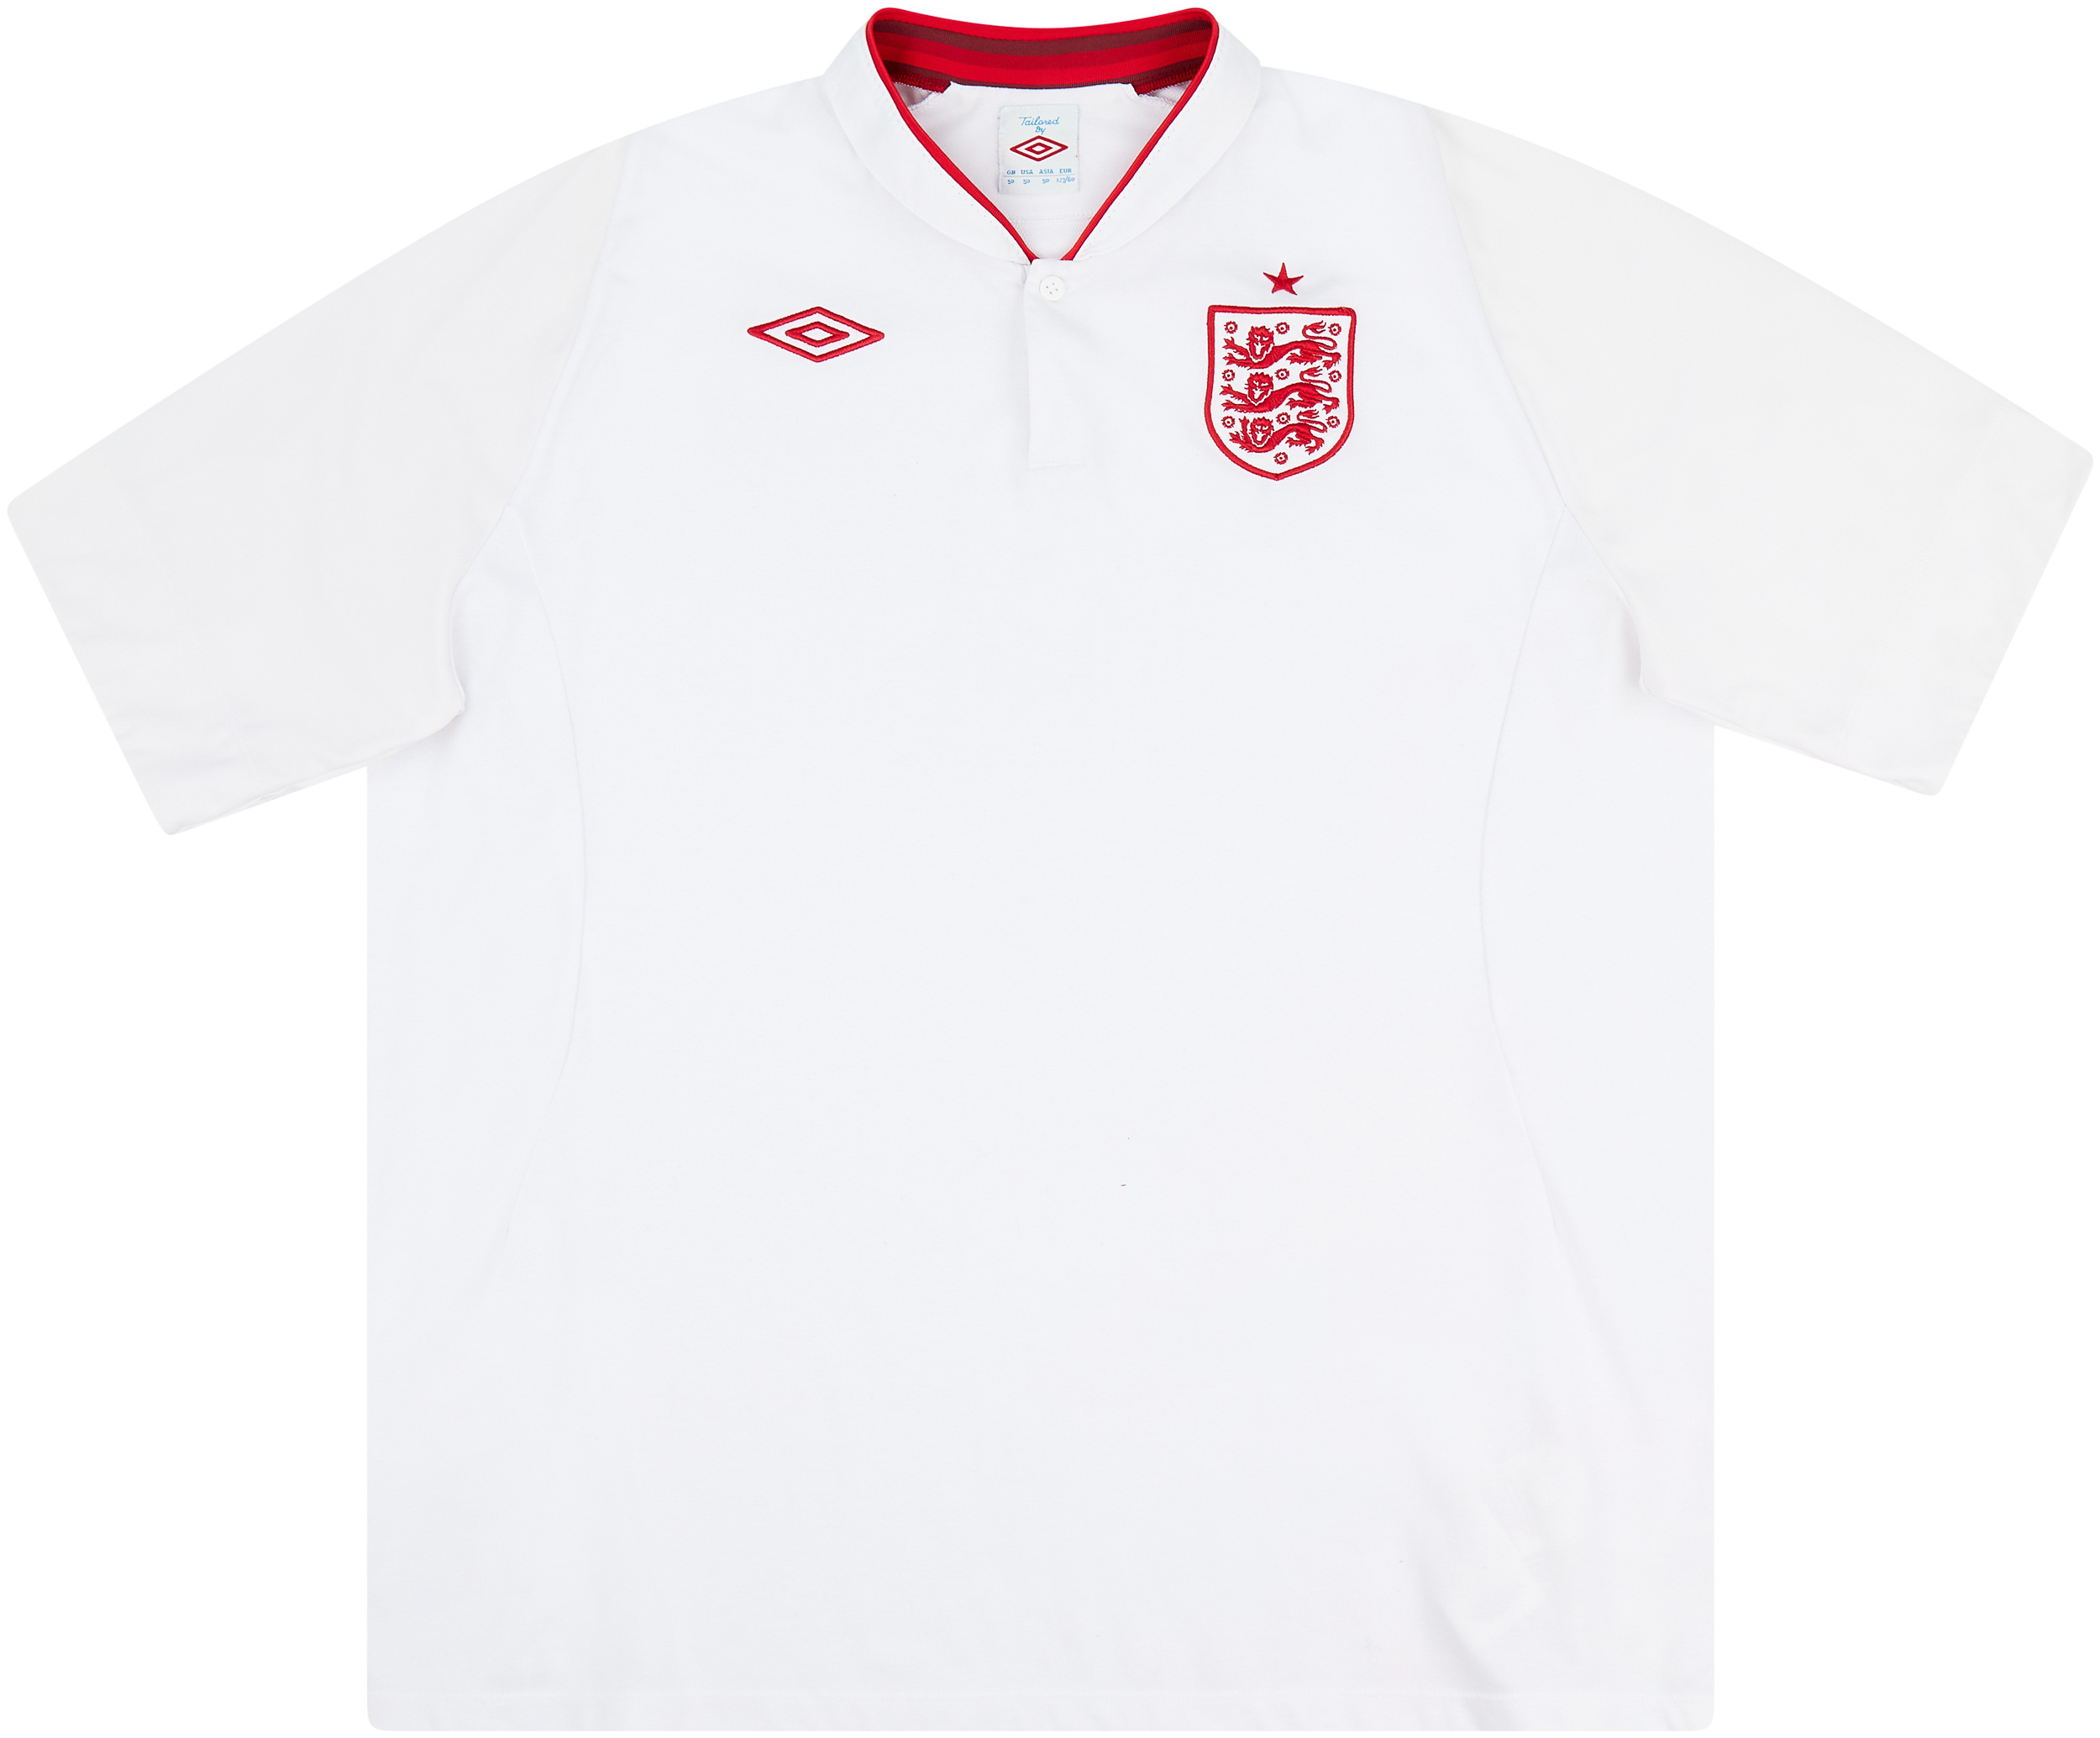 2012-13 England Home Shirt - 9/10 - ()